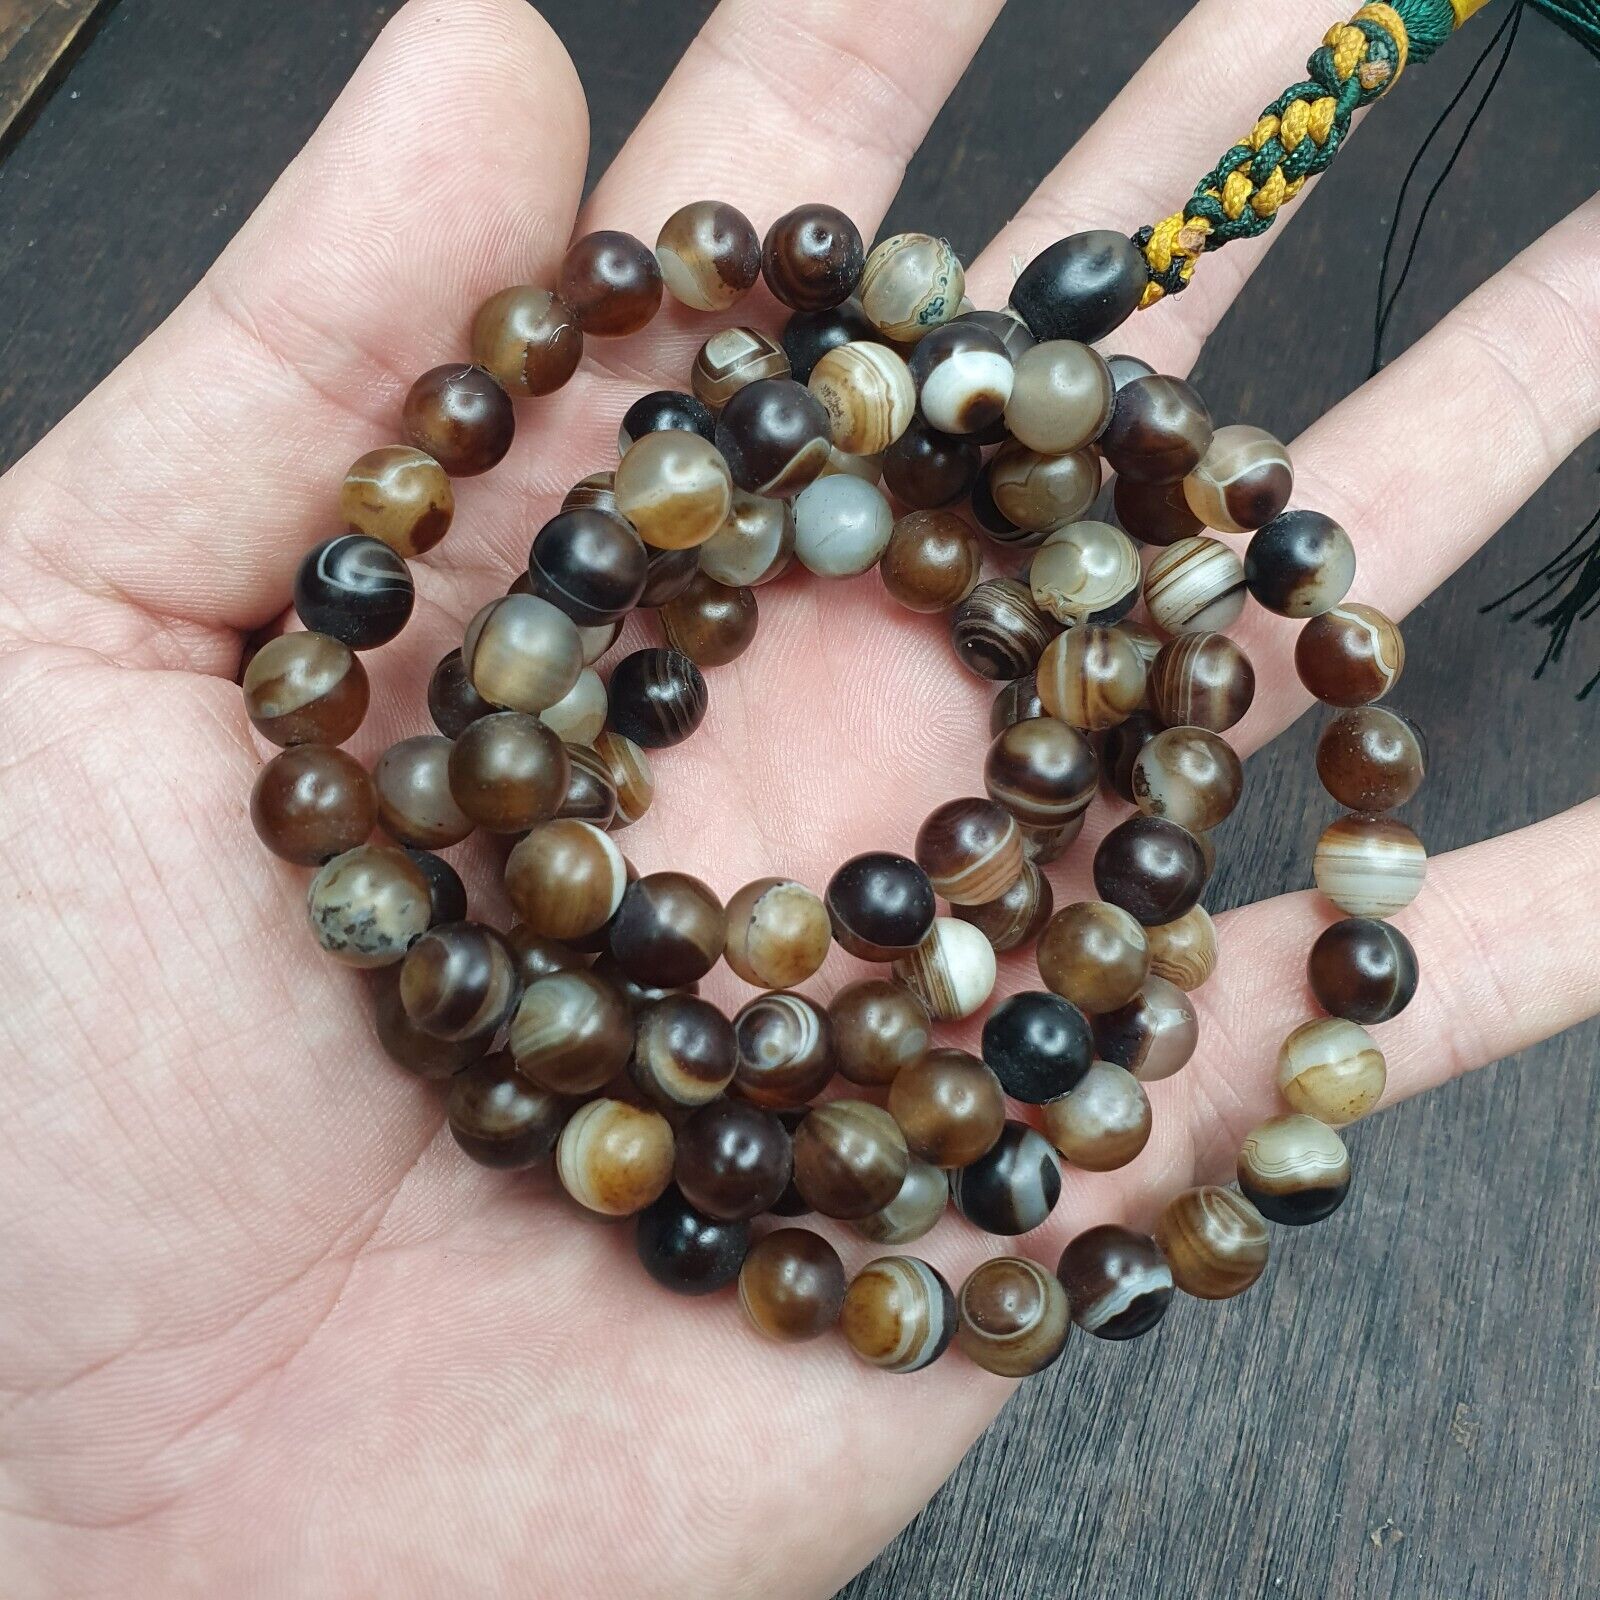 108(+) Prayer Beads Agate Stone , Tibetan Buddhist Rosary Buddha Beads.